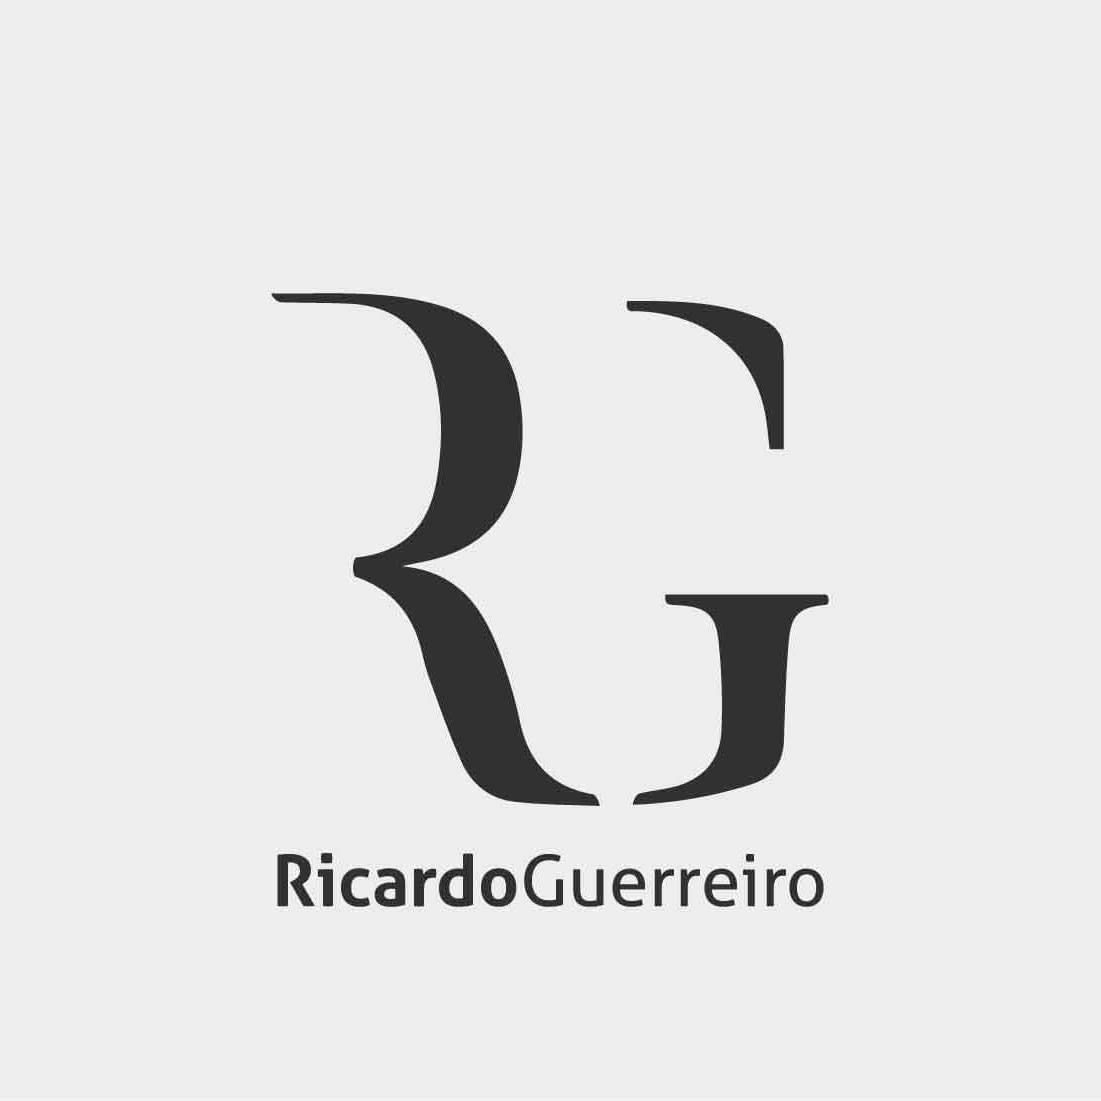 Ricardo Guerreiro - Paredes de Coura - Ventriloquismo